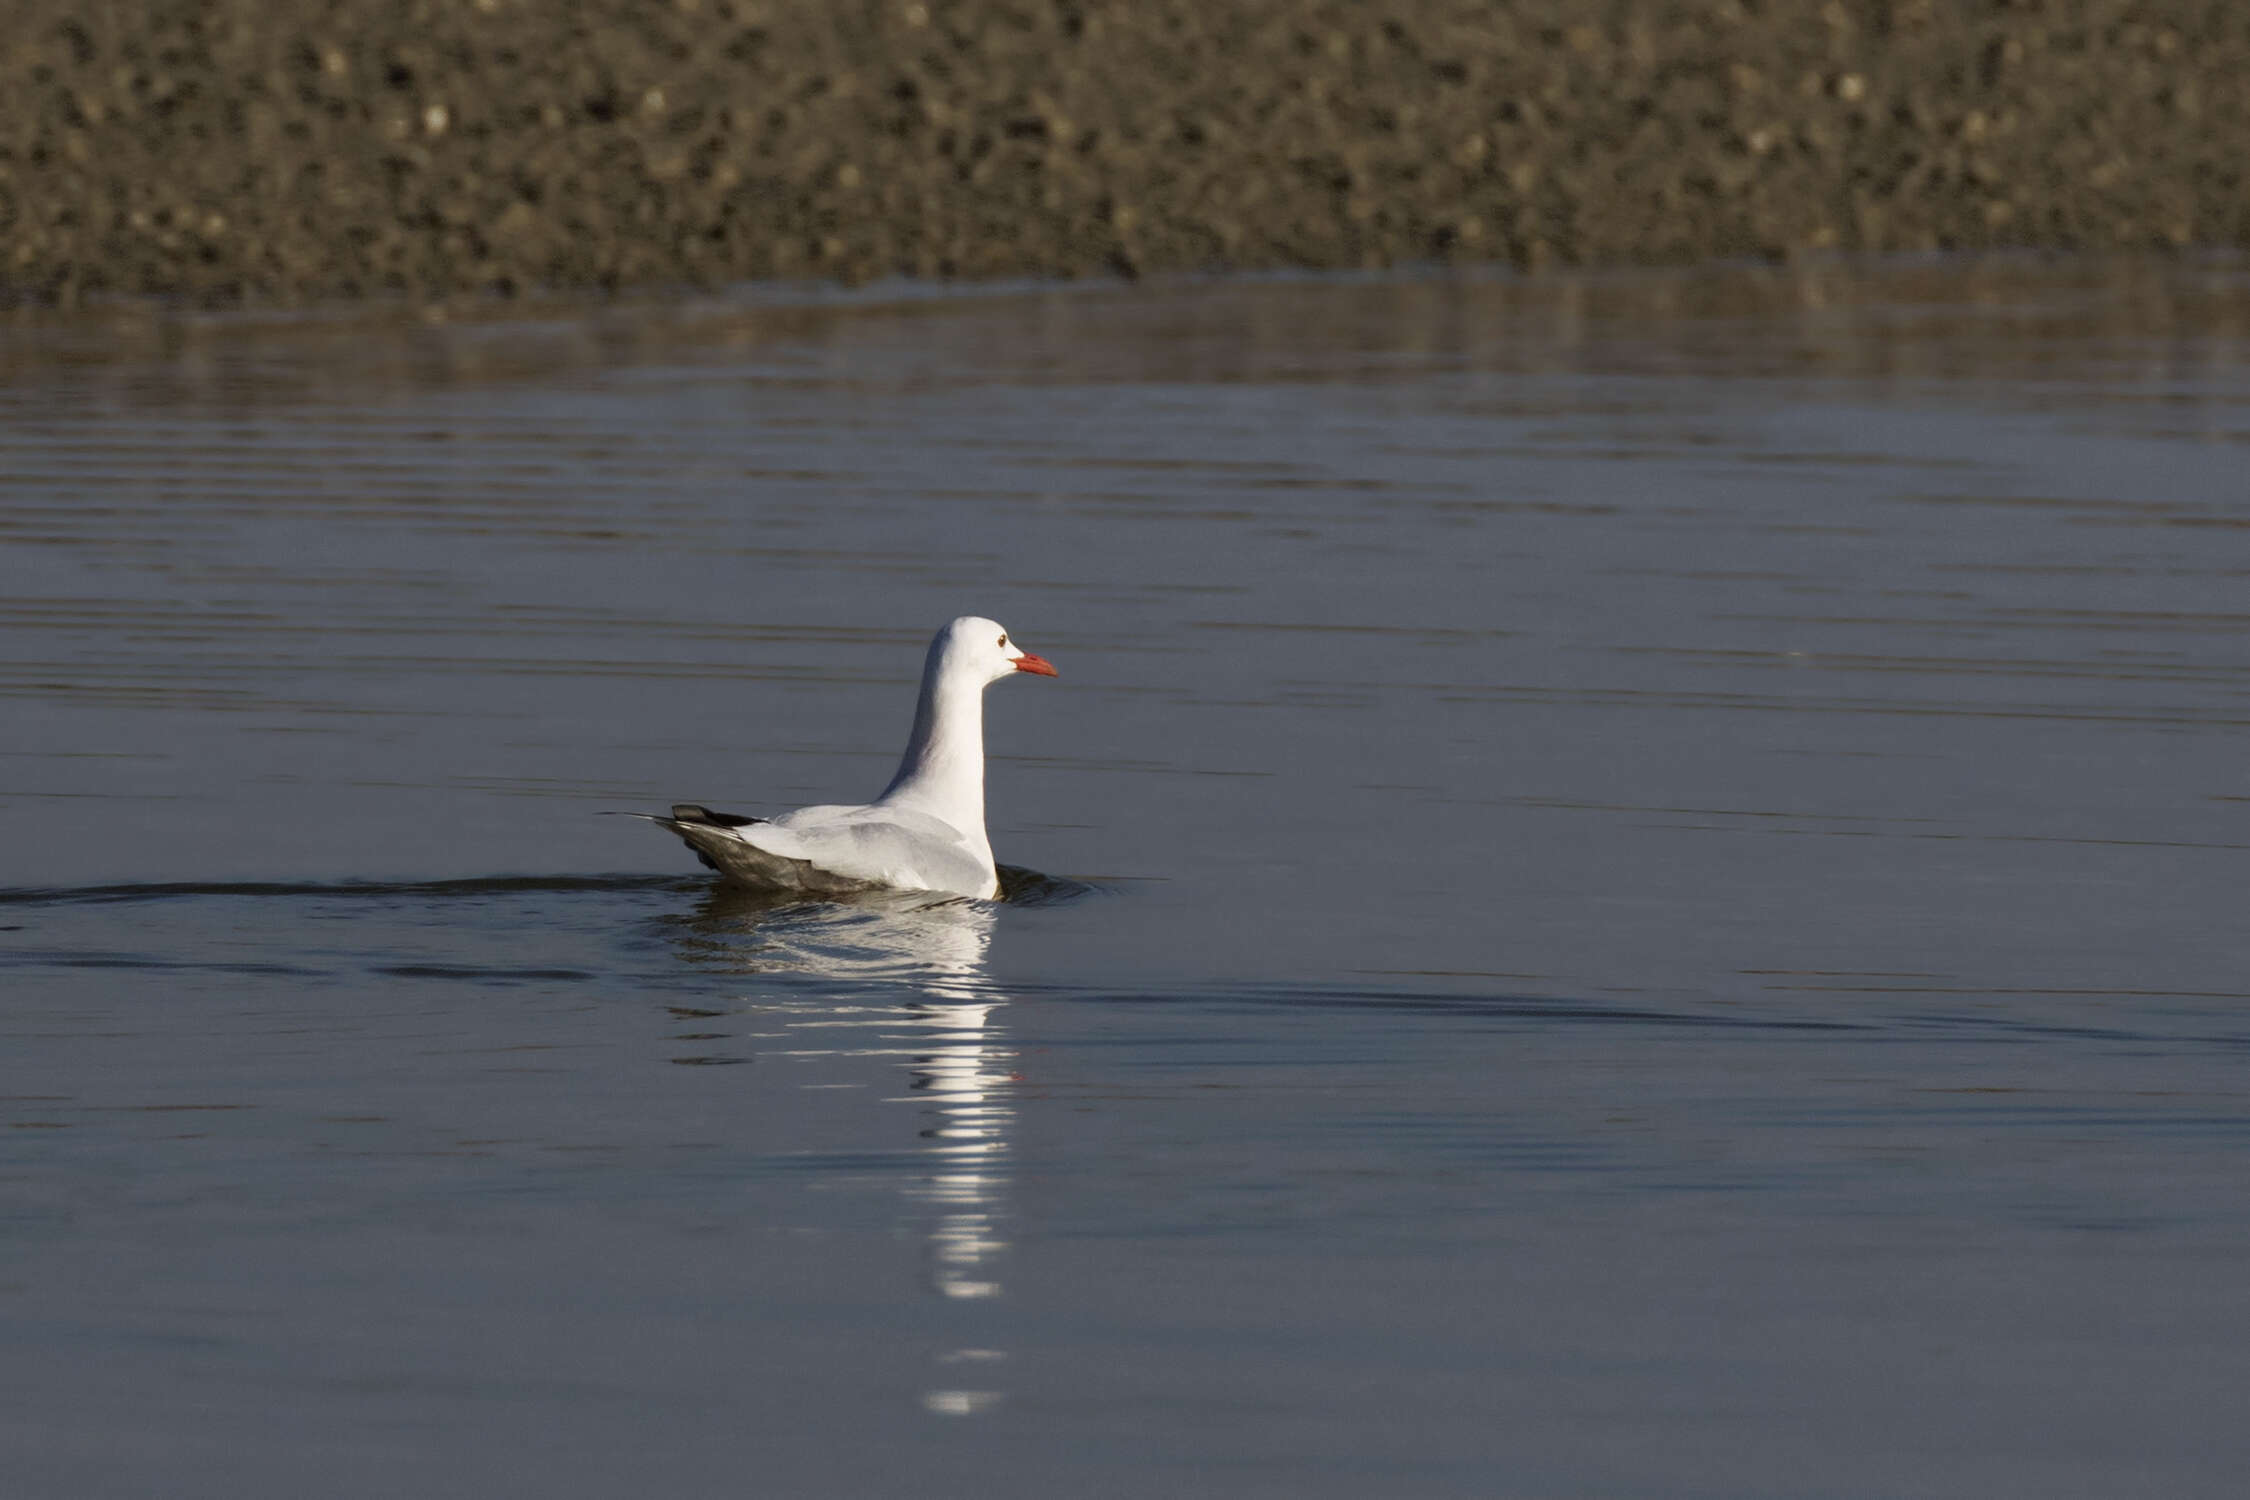 Image of Slender-billed Gull